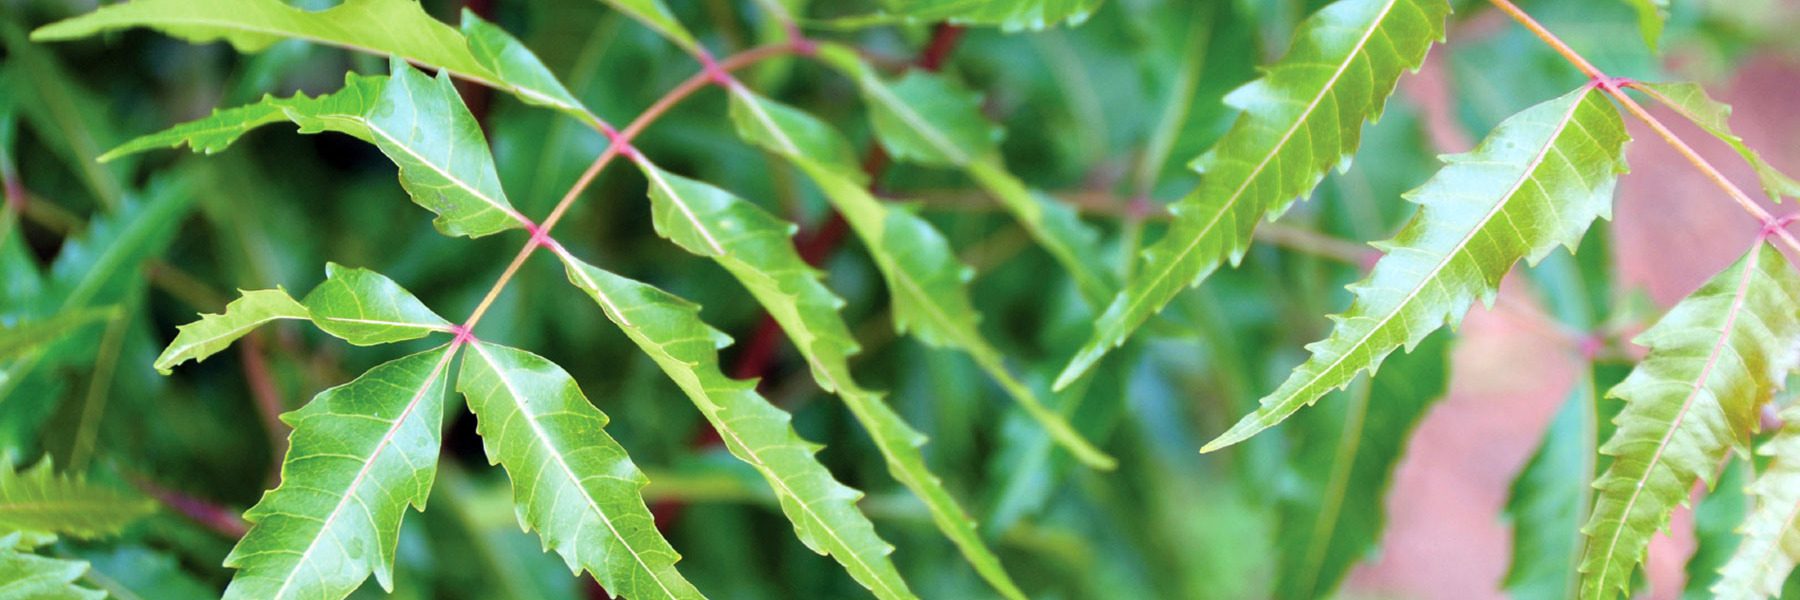 Neem Benefits for Skin & Health - Ayurvedic Herb Guides | Banyan Botanicals